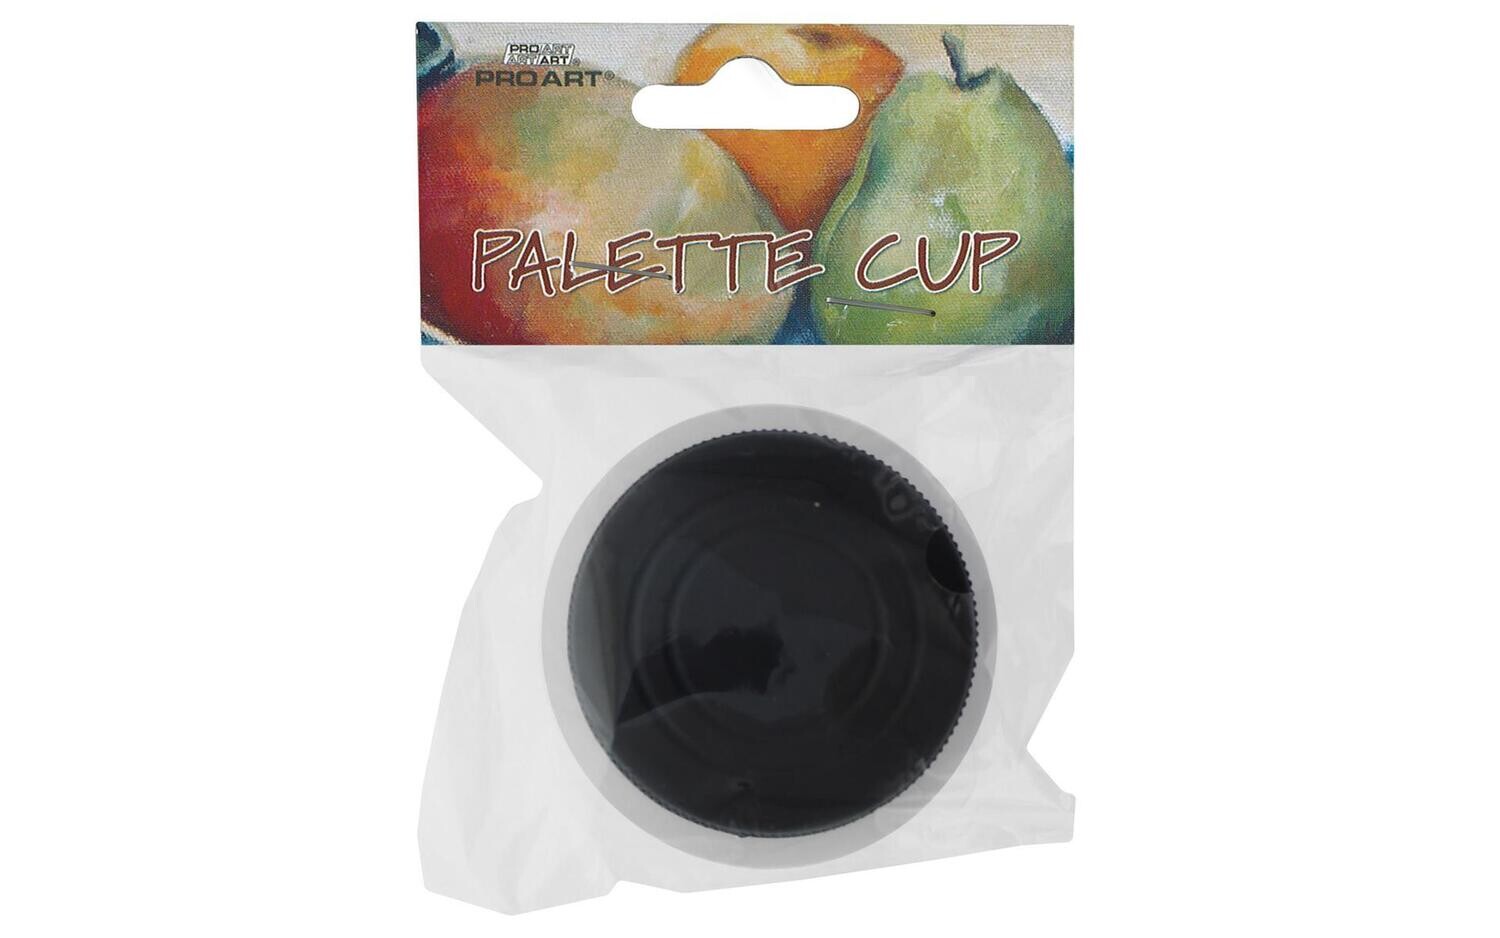 Pro Art Palette Cup